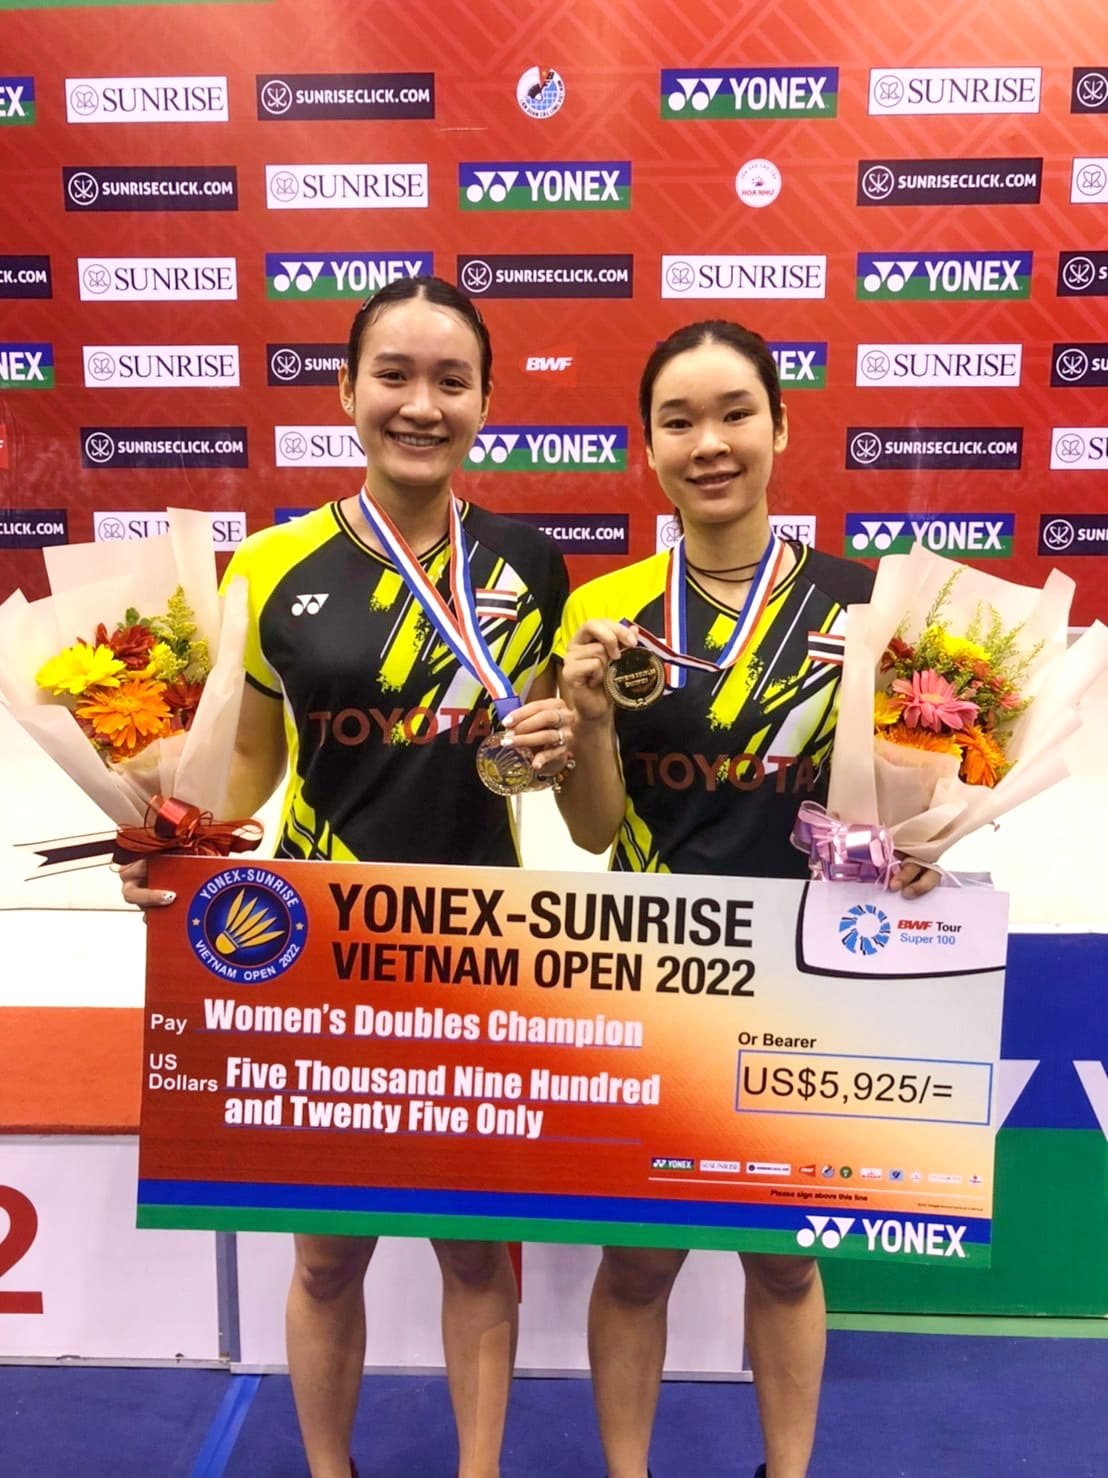 “มูนา-อันนา” หญิงคู่สองพี่น้องดาวรุ่ง คว้าแชมป์เวียดนาม โอเพ่น 2022เป็นการคว้าแชมป์ที่สองของปีนี้